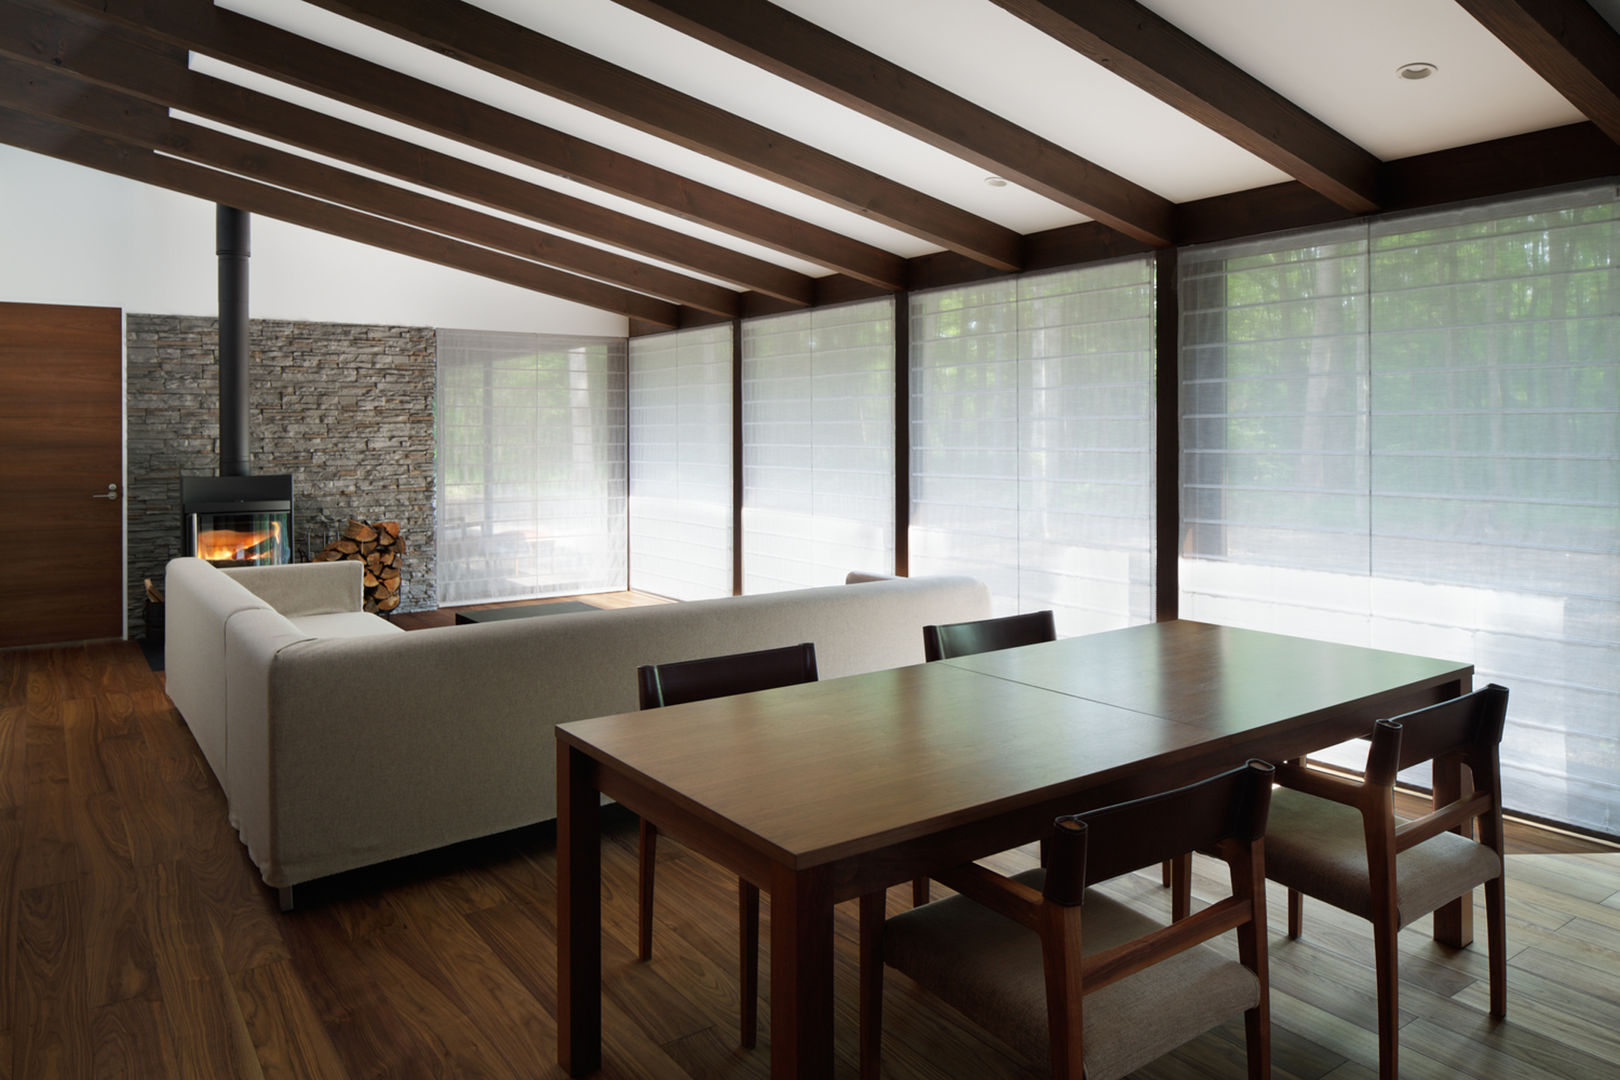 025軽井沢Sさんの家, atelier137 ARCHITECTURAL DESIGN OFFICE atelier137 ARCHITECTURAL DESIGN OFFICE Asian style dining room Wood Wood effect